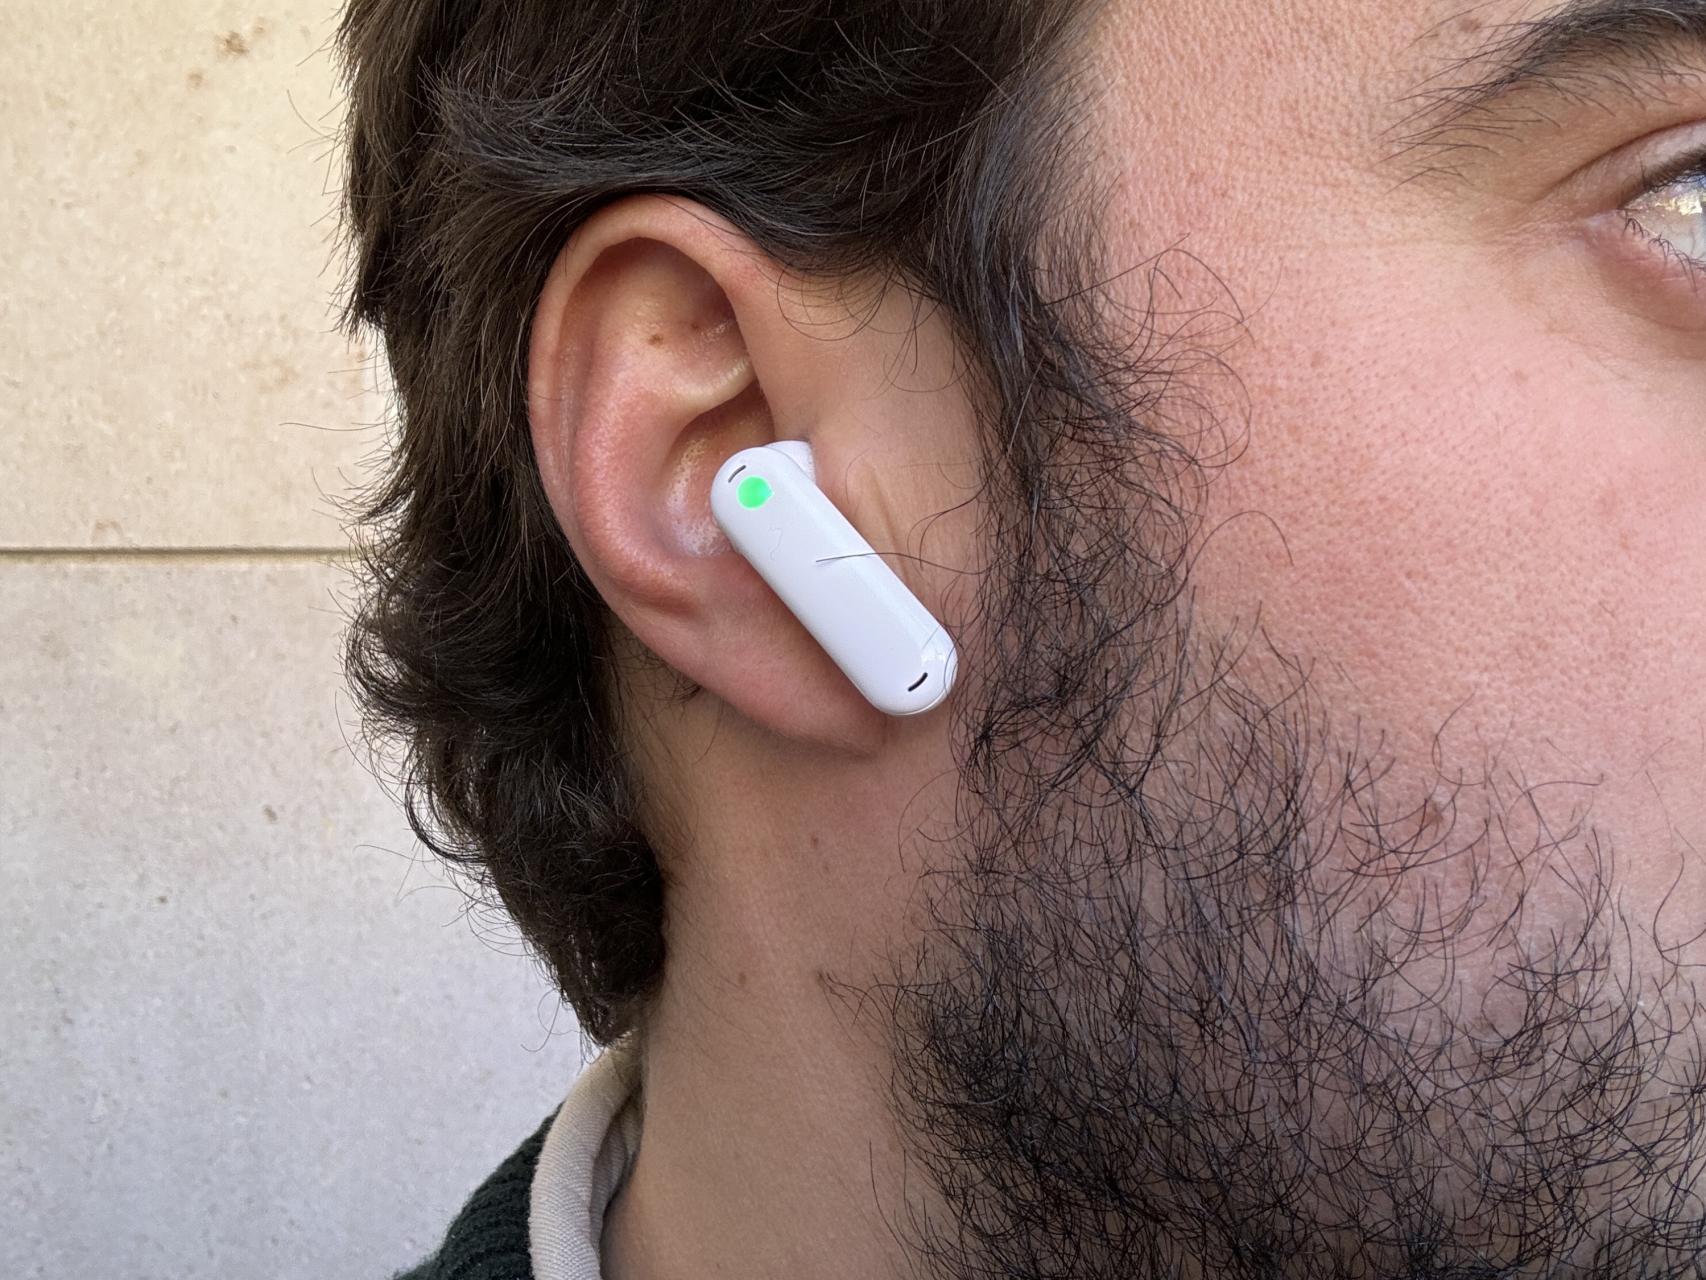 Probamos los auriculares inalámbricos Nothing Ear(2): ¿Son realmente la  alternativa barata a los AirPods de Apple?